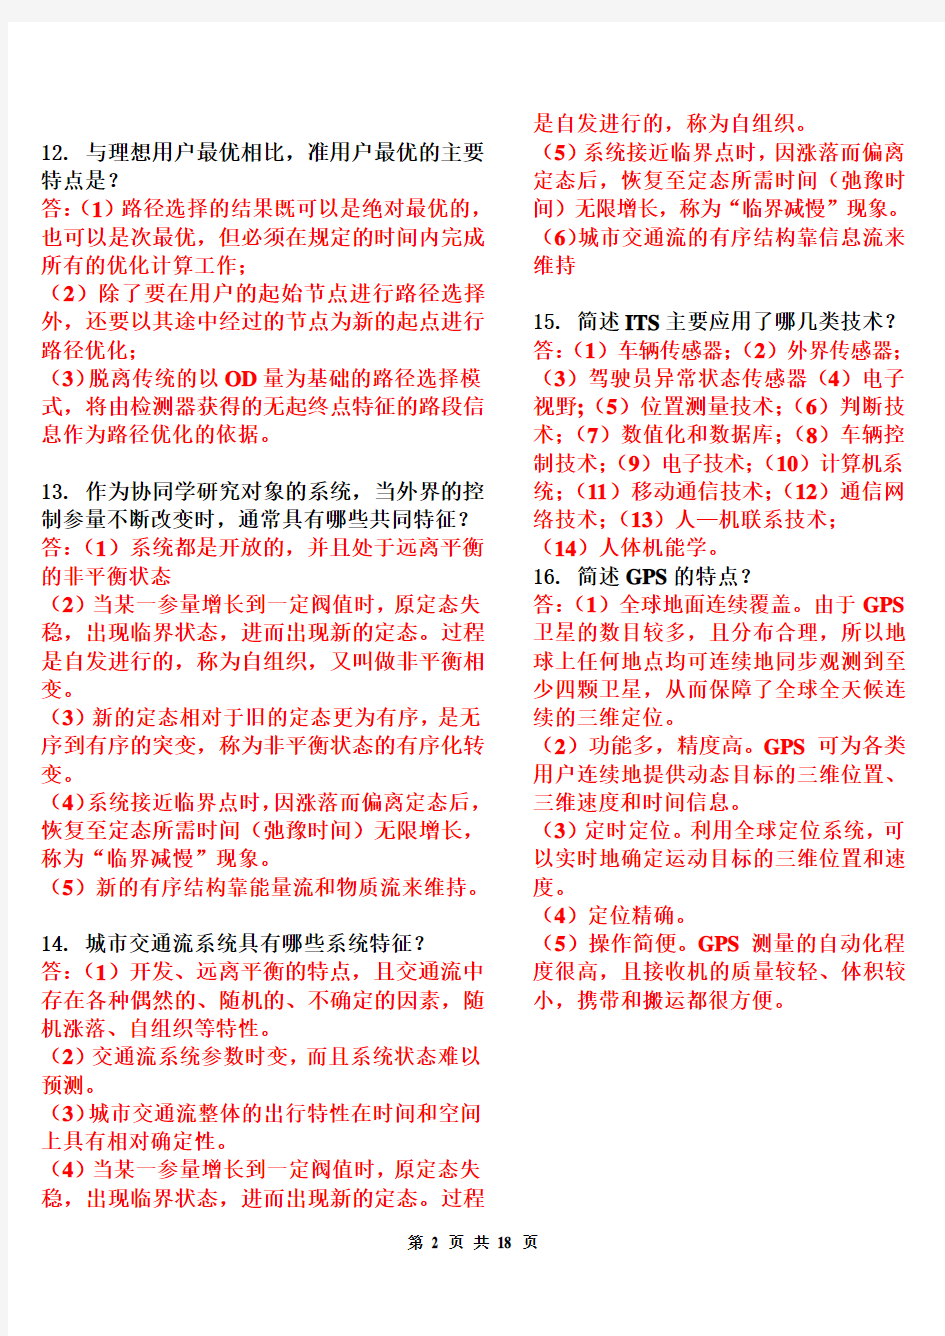 (完整版)智能交通系统_习题集(含答案2012.11.20)